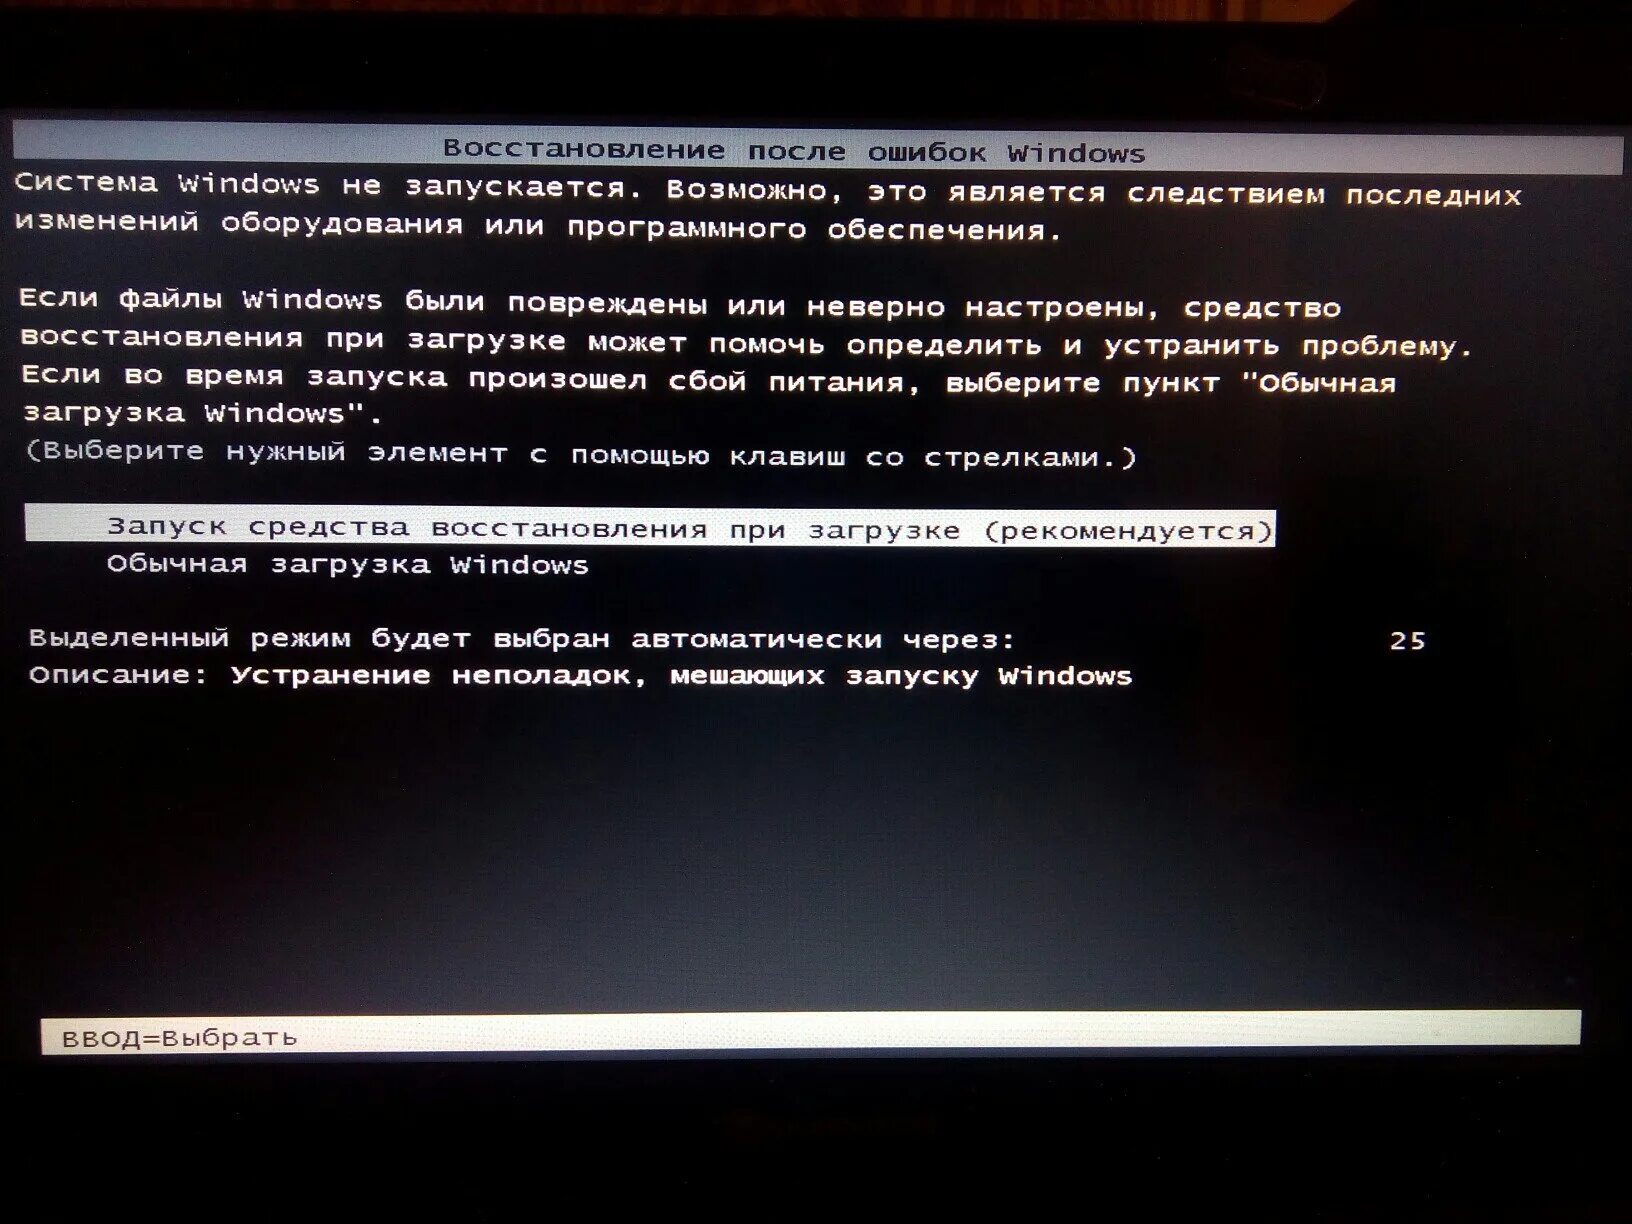 Ошибка загрузки windows 7. Ошибка загрузки компьютера. Ошибка при включении компьютера. Ошибка запуска компьютера. Восстановление при загрузке устранение неполадок.